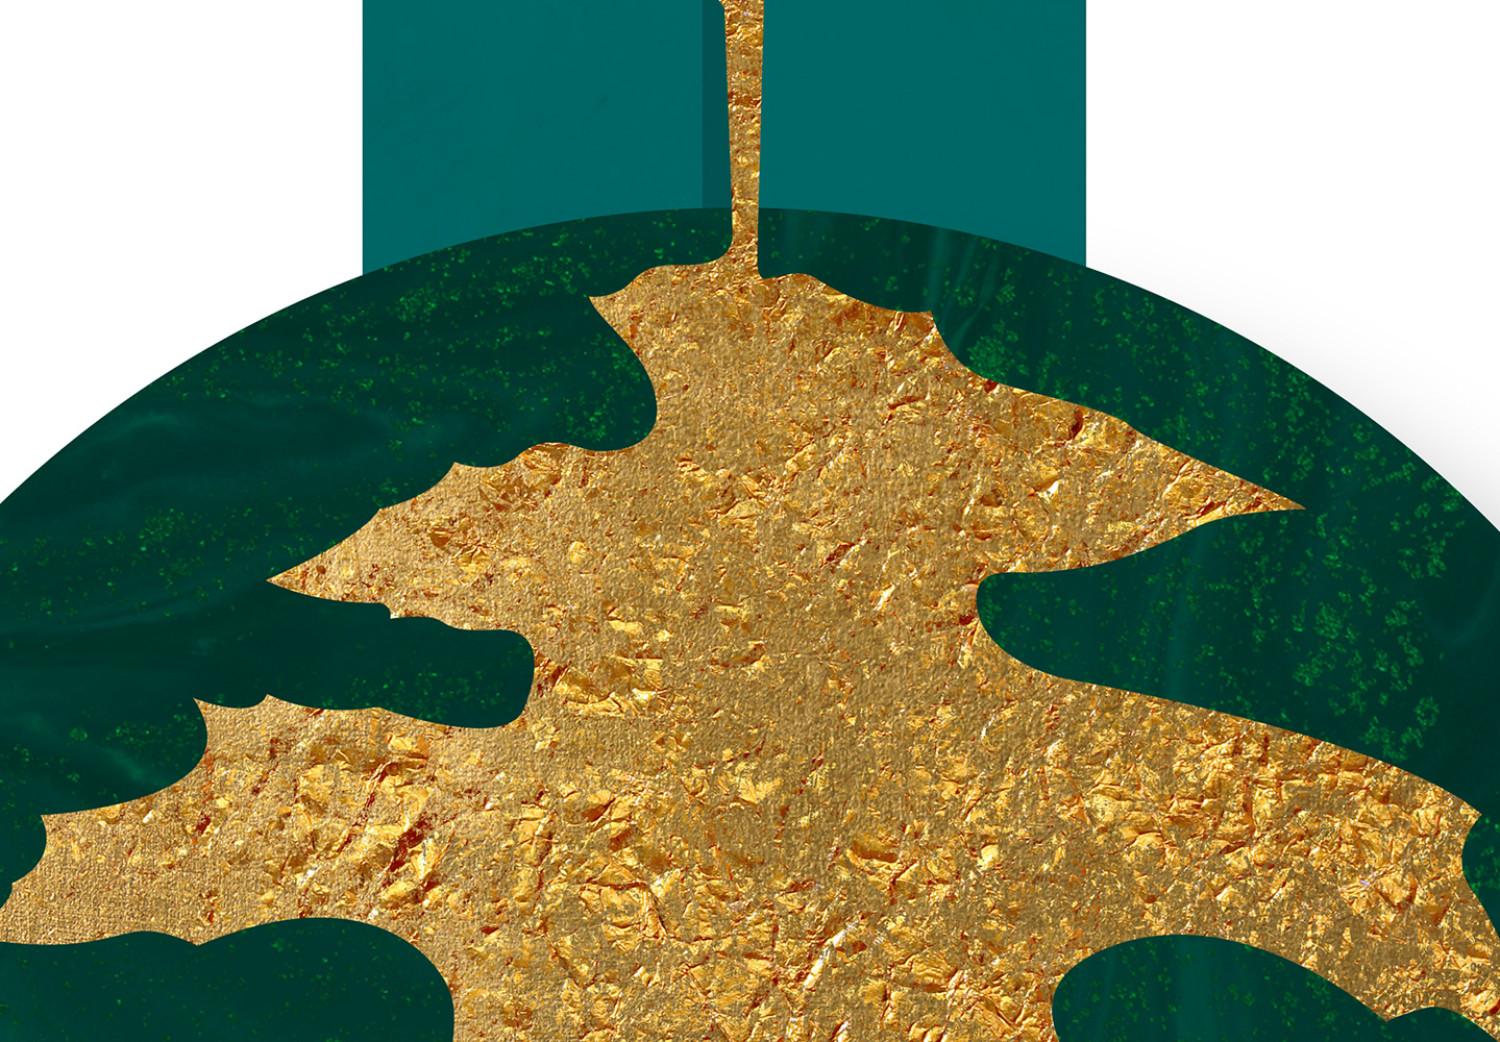 Cartel Riqueza verde: elementos esmeralda y dorados